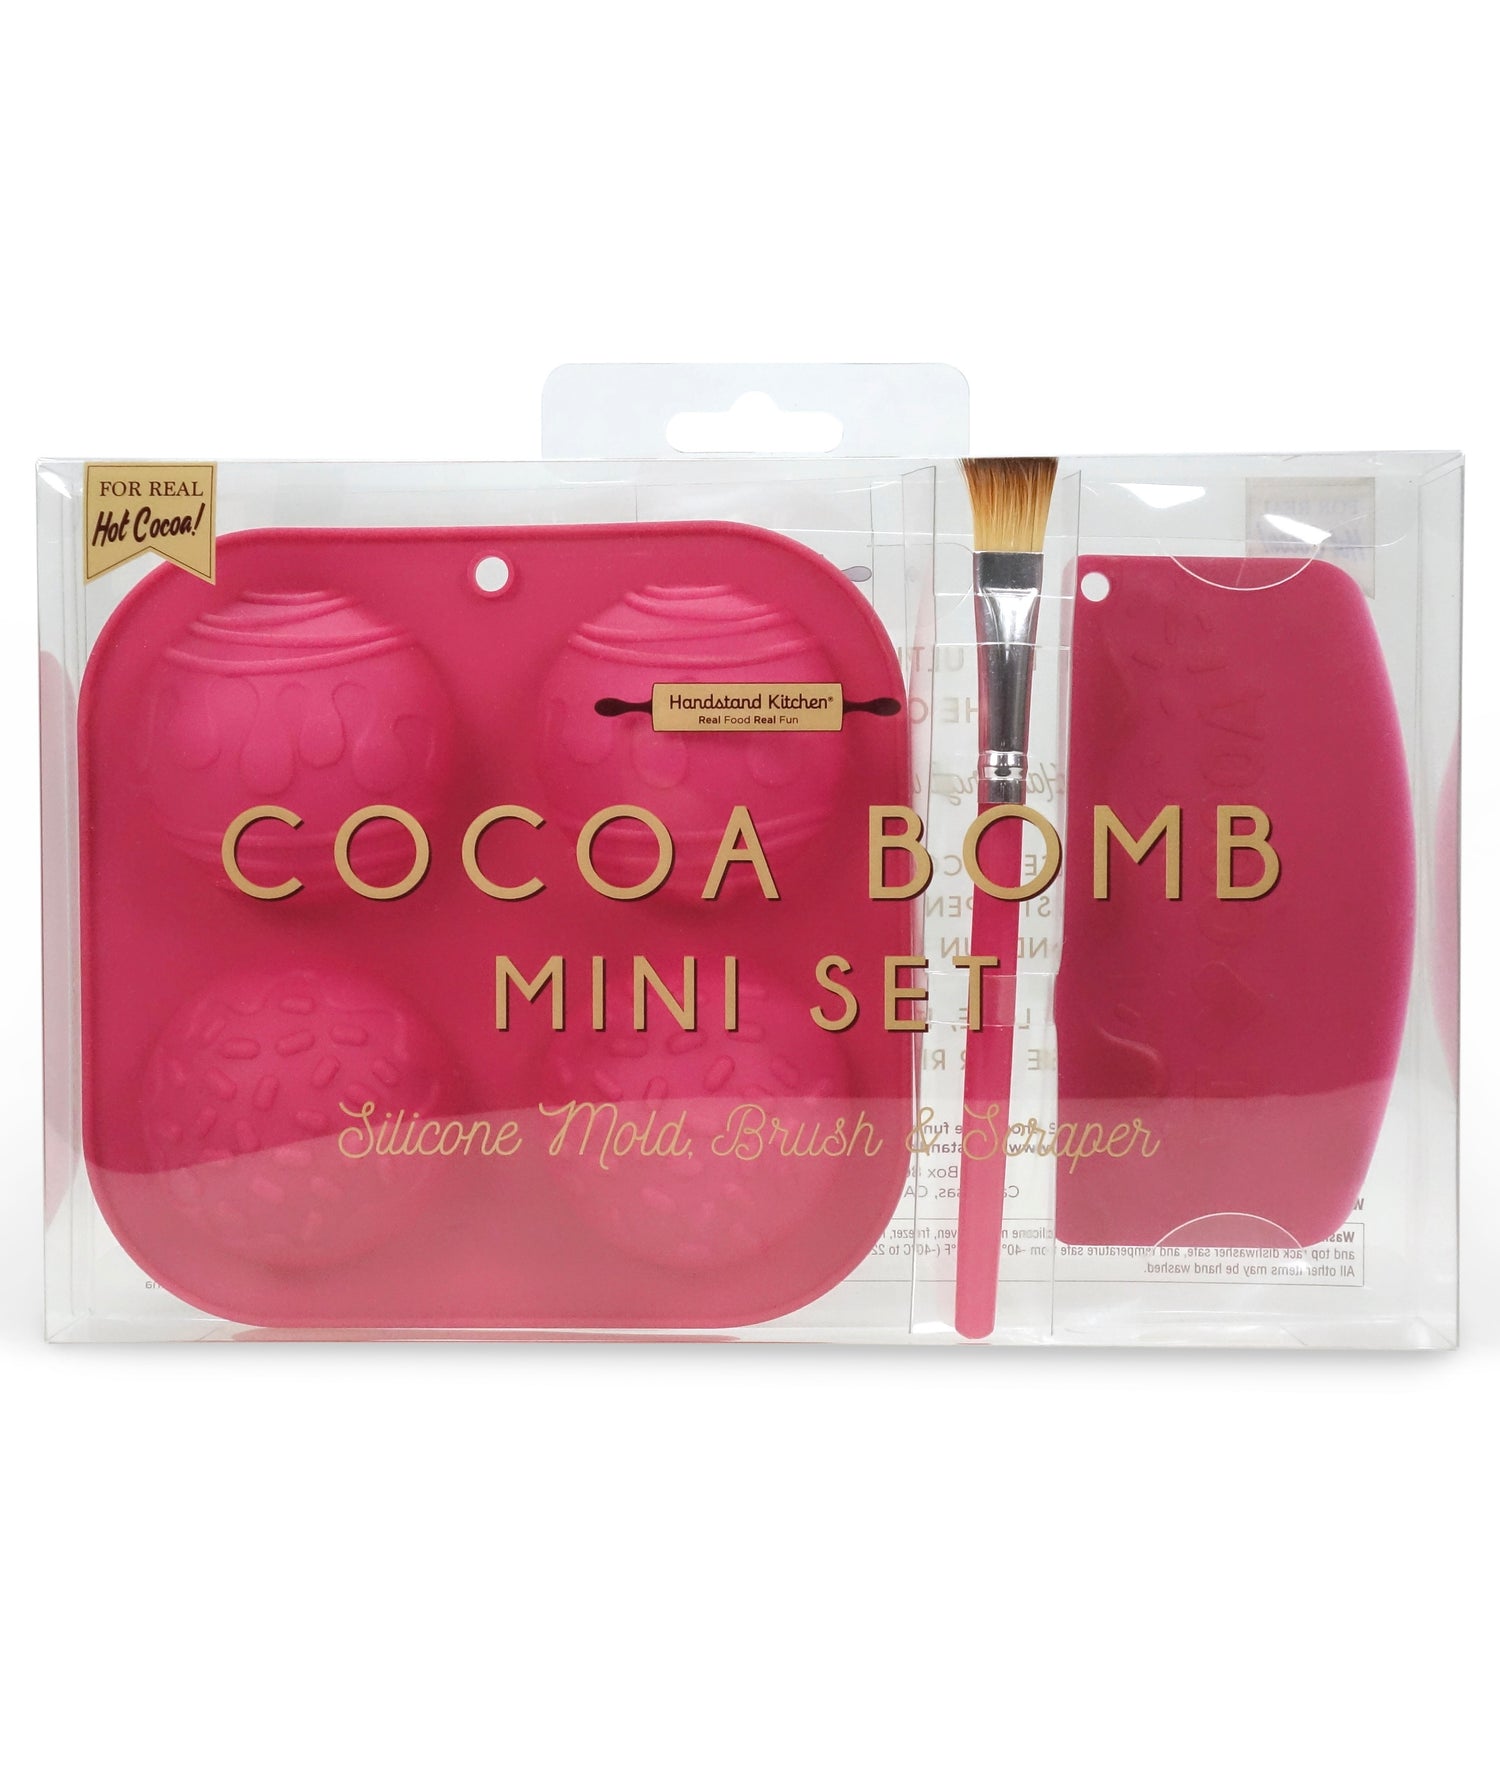 Cocoa Bomb Mini Set – Handstand Kitchen